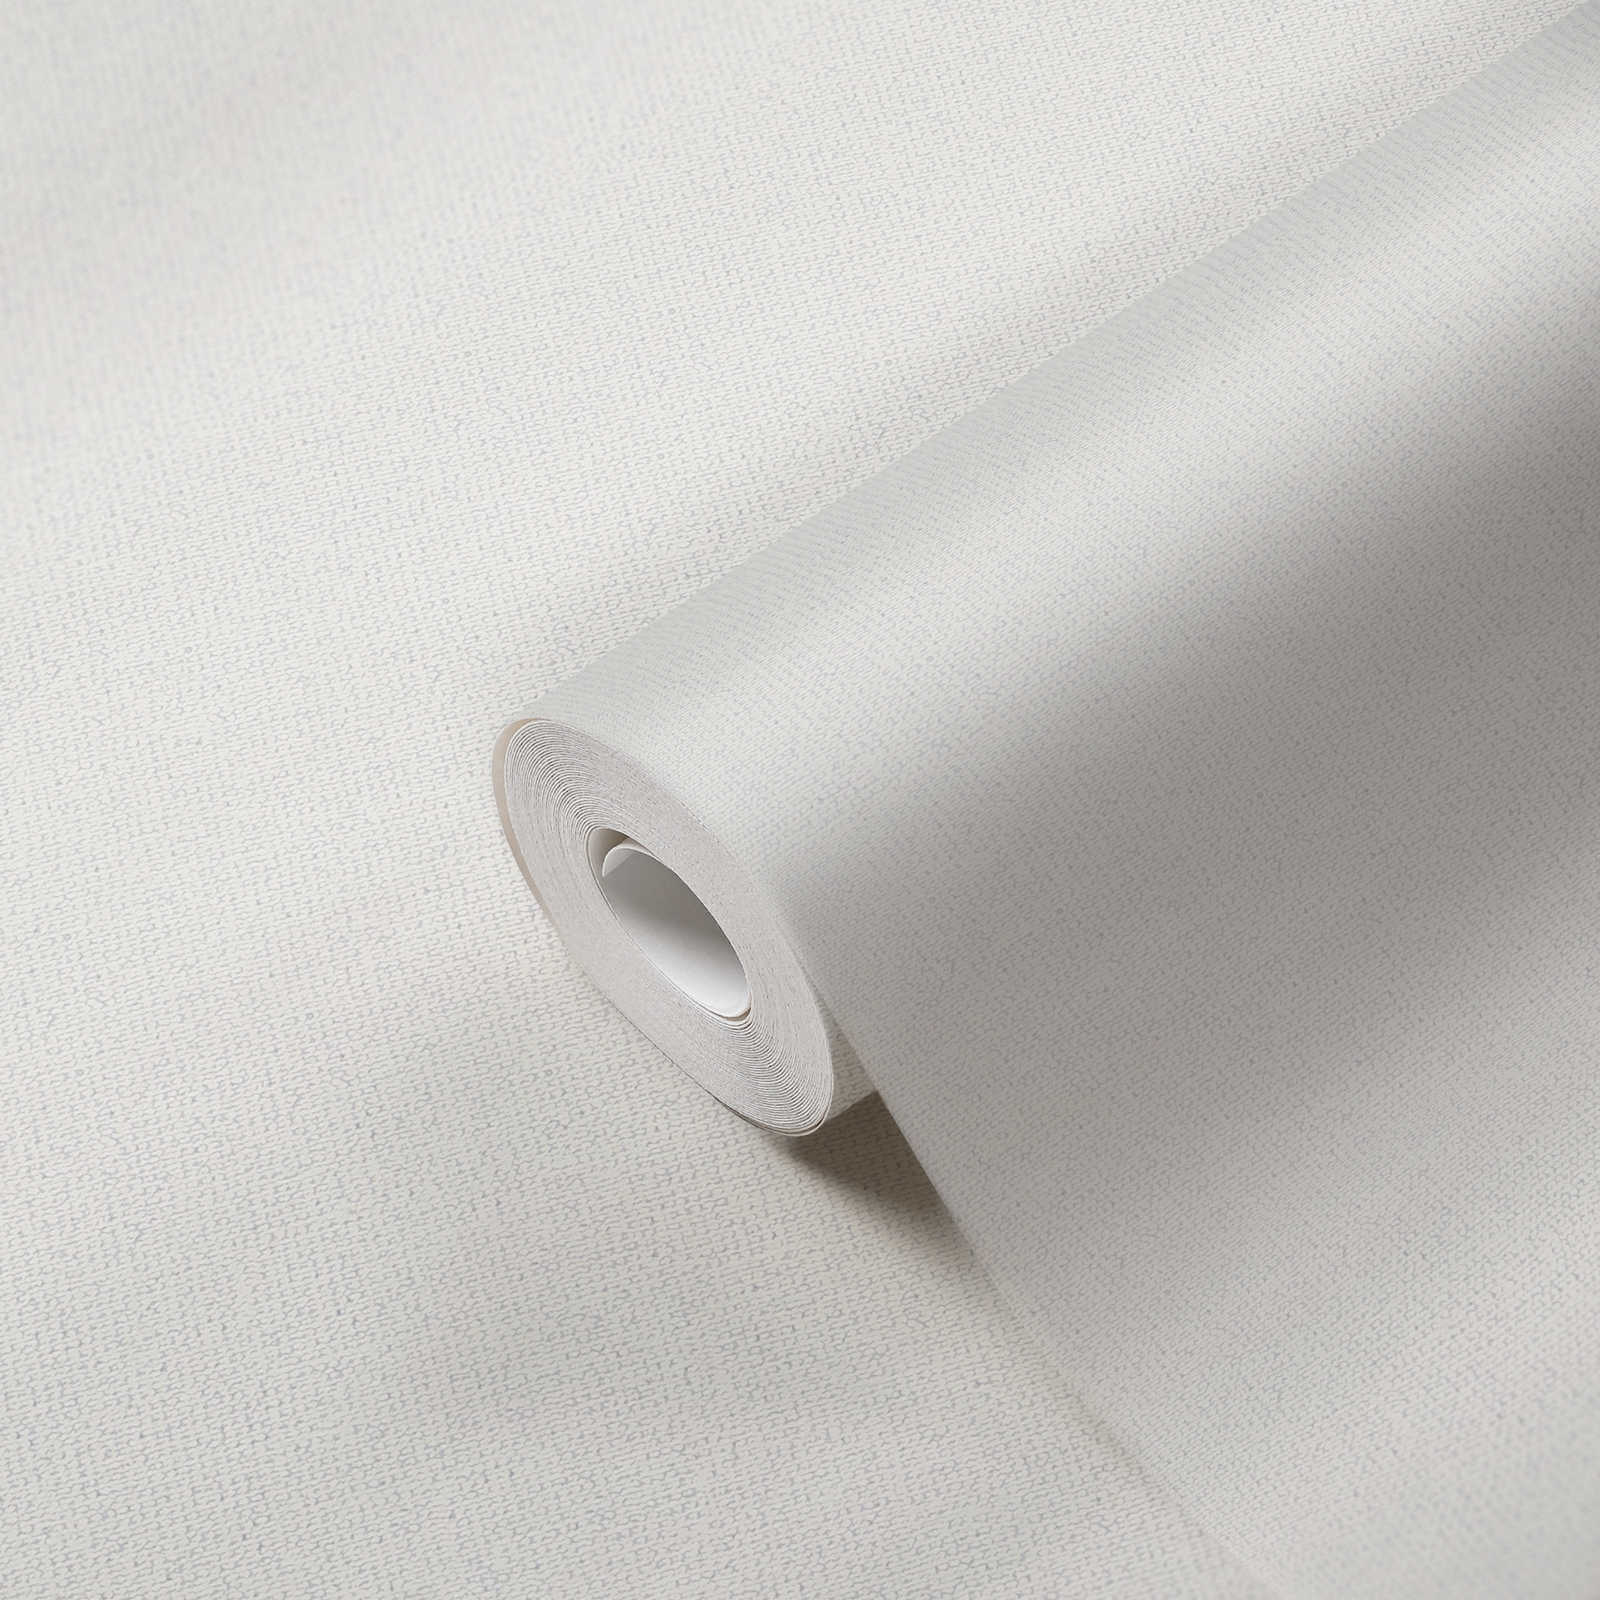             Carta da parati a tinta unita effetto lino con struttura opaca - bianco
        